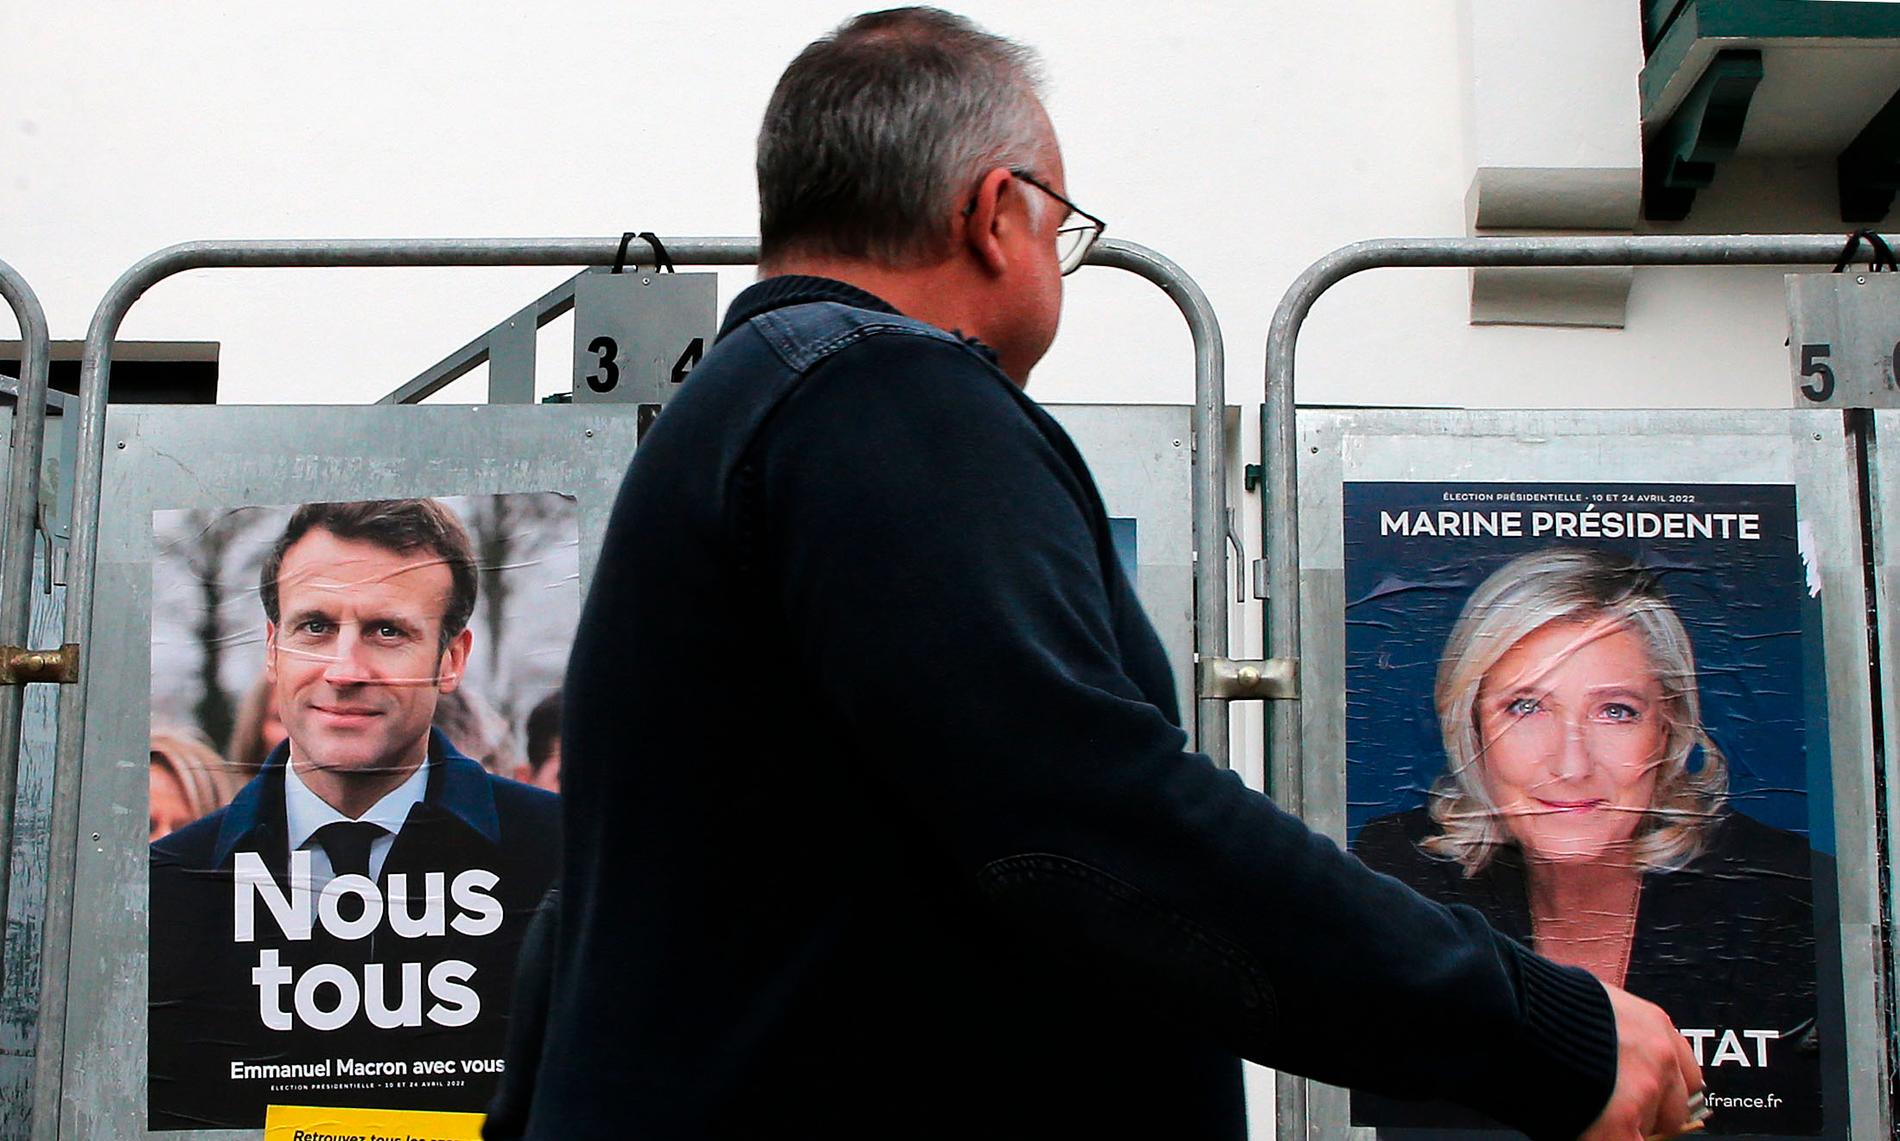 Idag går fransmännen till val. Extremhögerns Marine Le Pen har mot slutet närmat sig Emmanuel Macron i opinionen. 